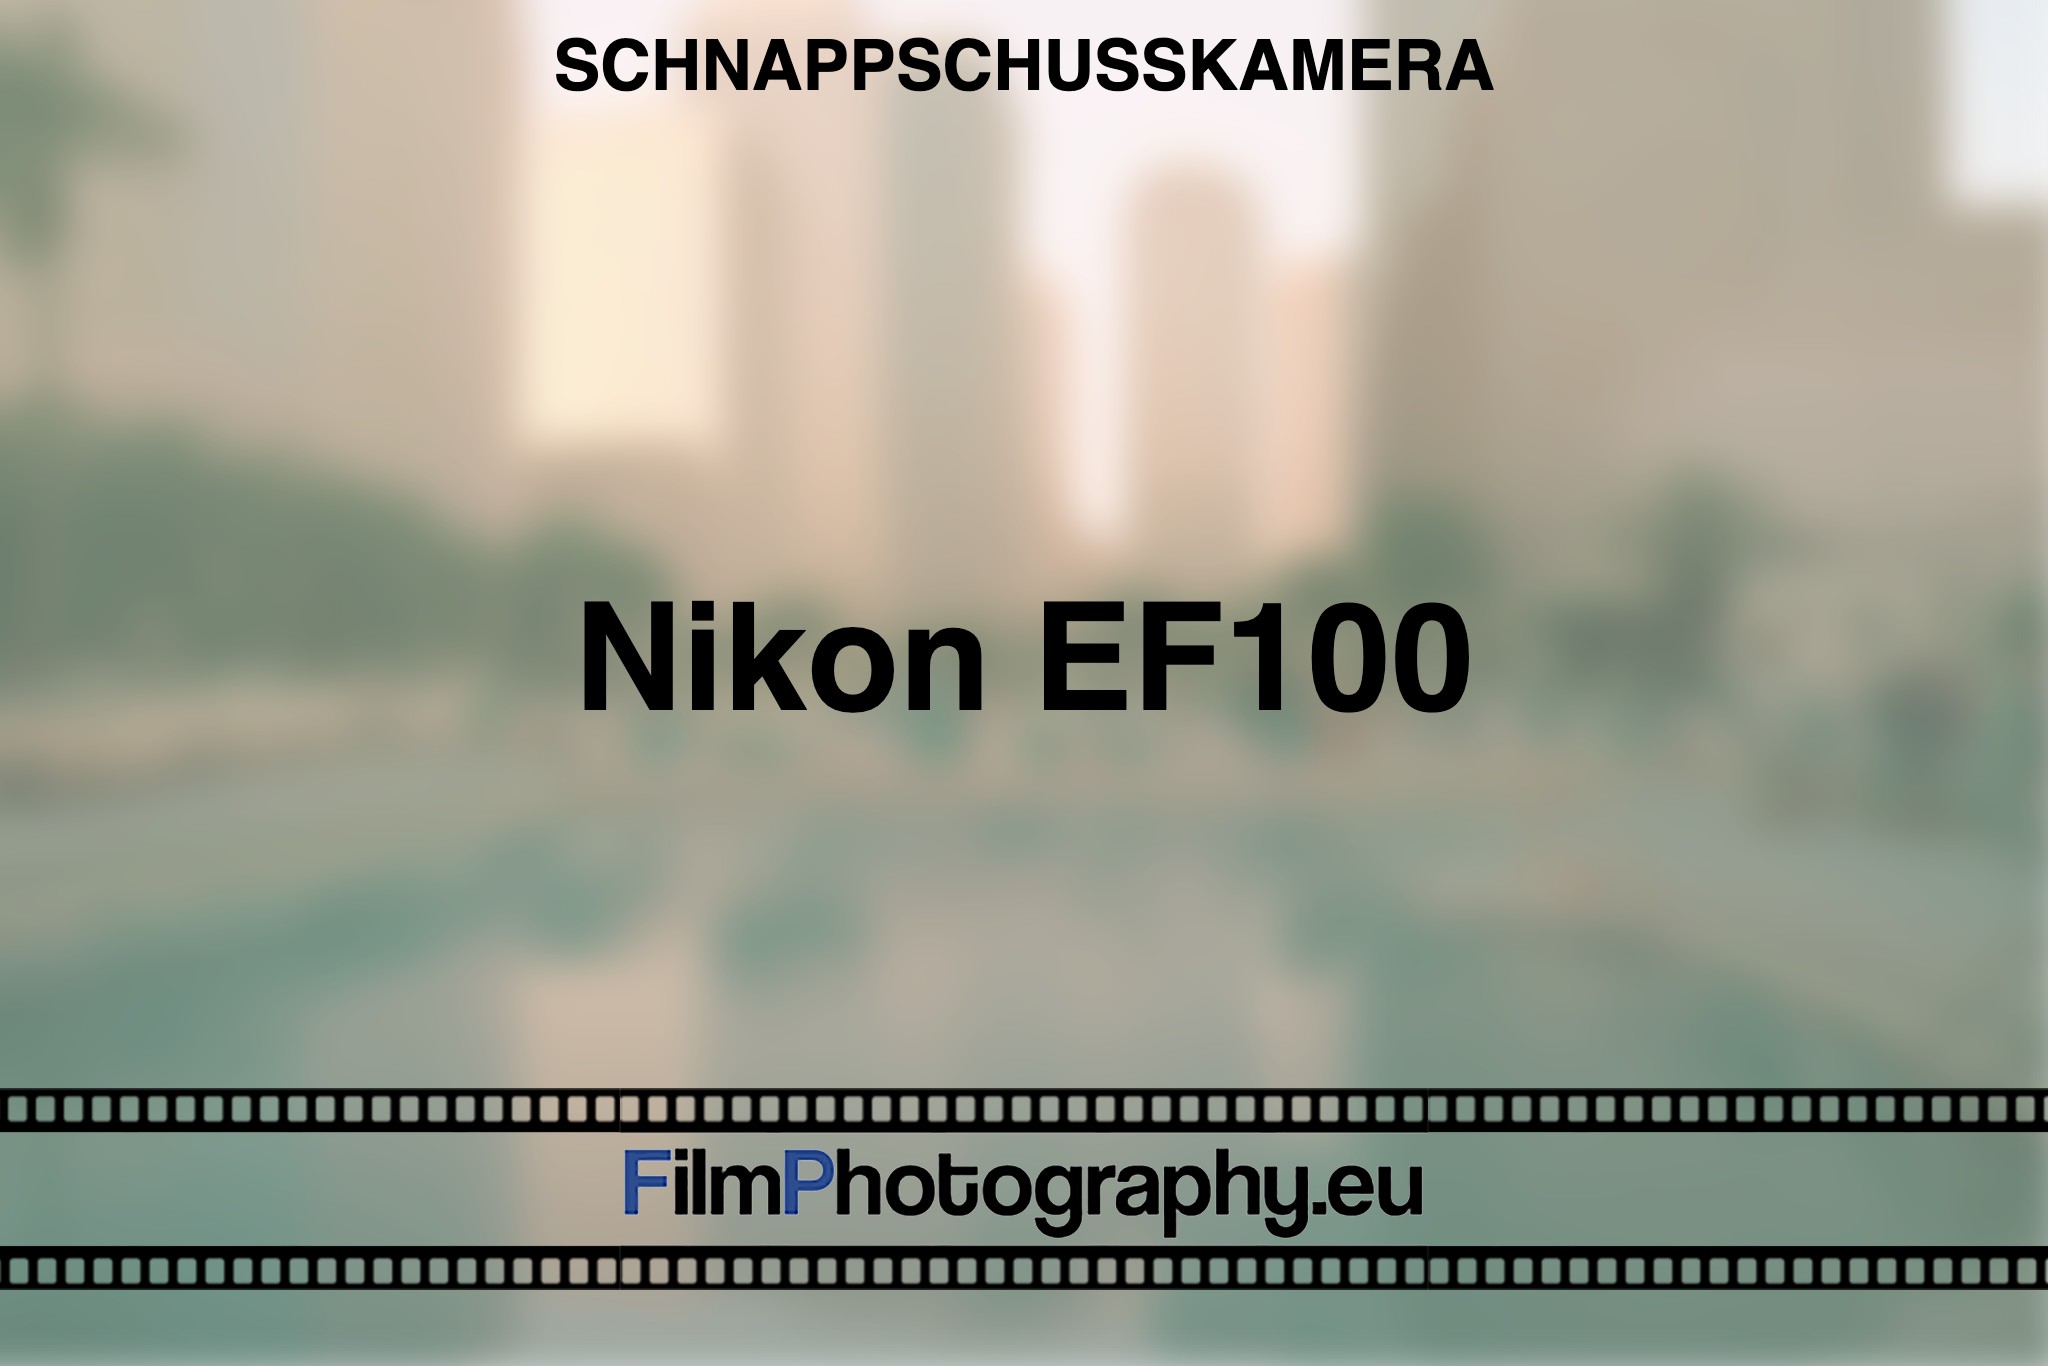 nikon-ef100-schnappschusskamera-bnv